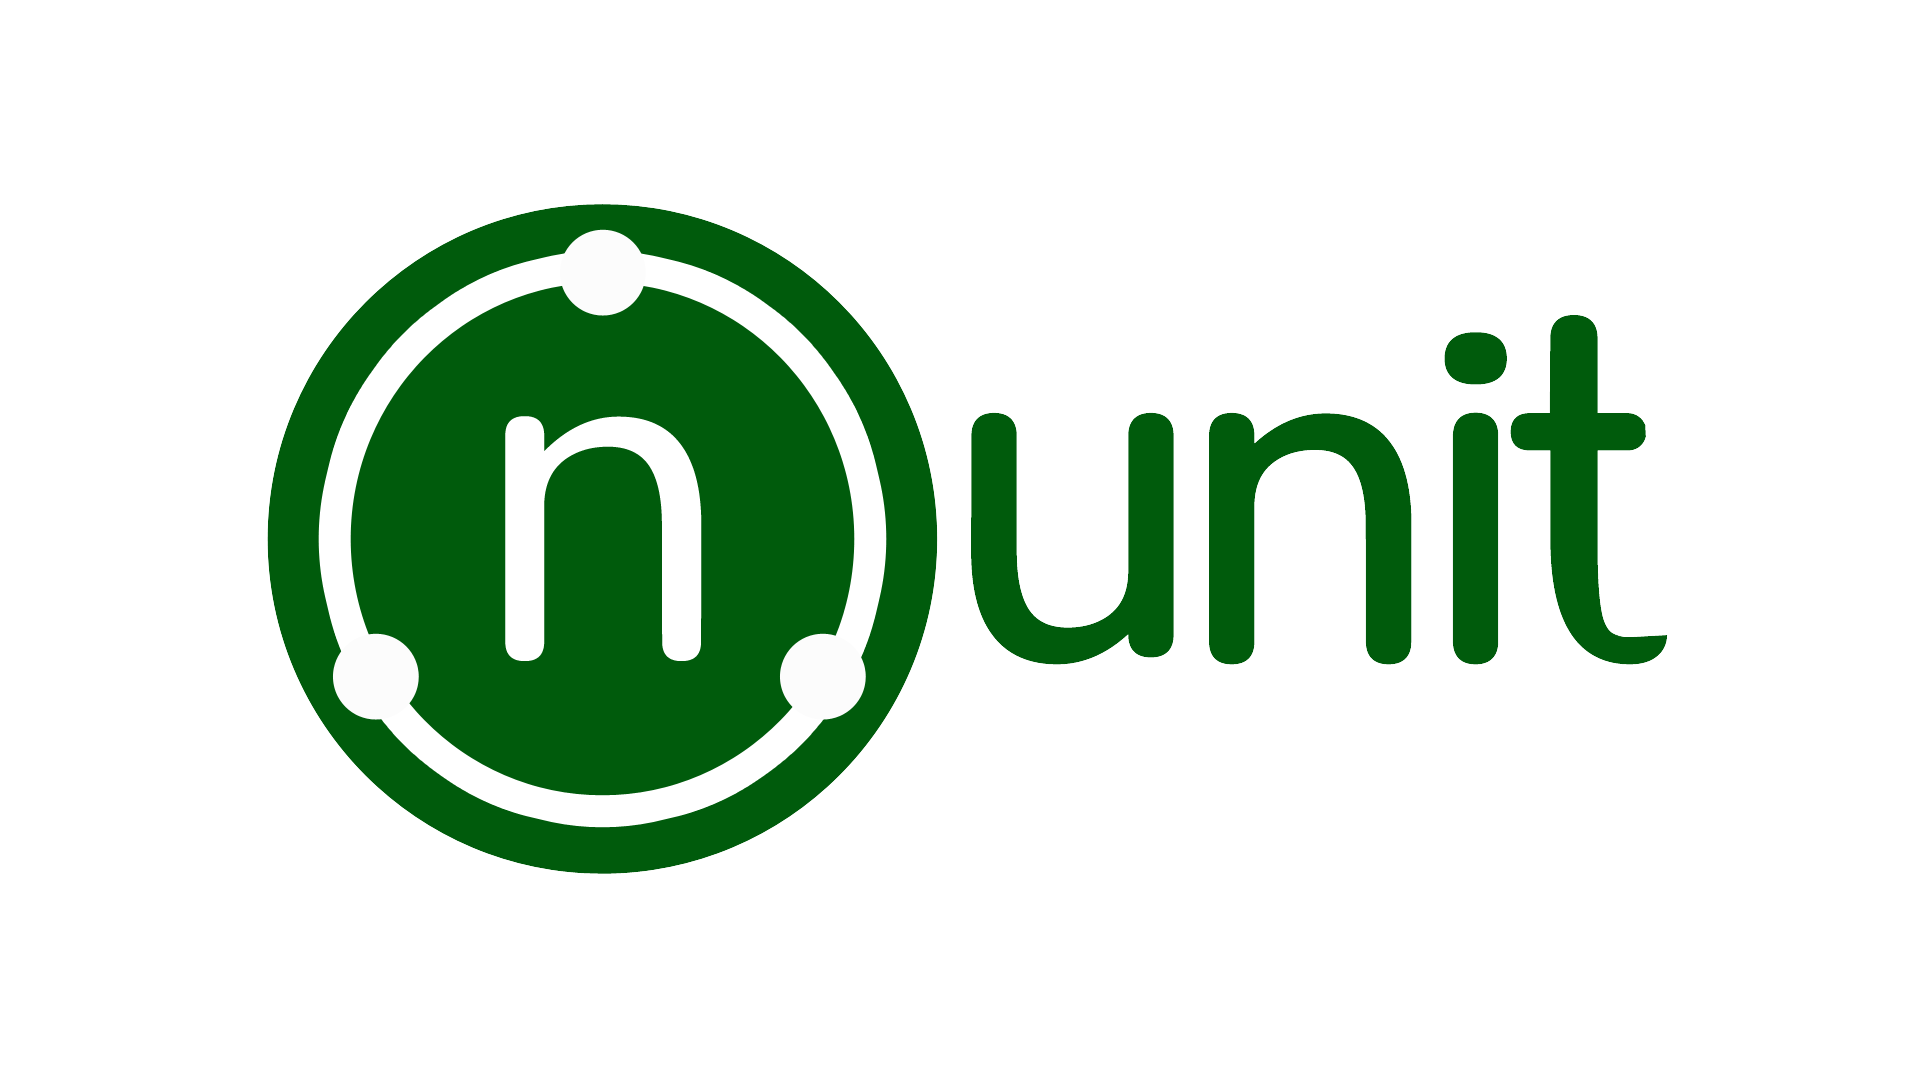 Prueba unitaria de C # con NUnit y .NET Core)